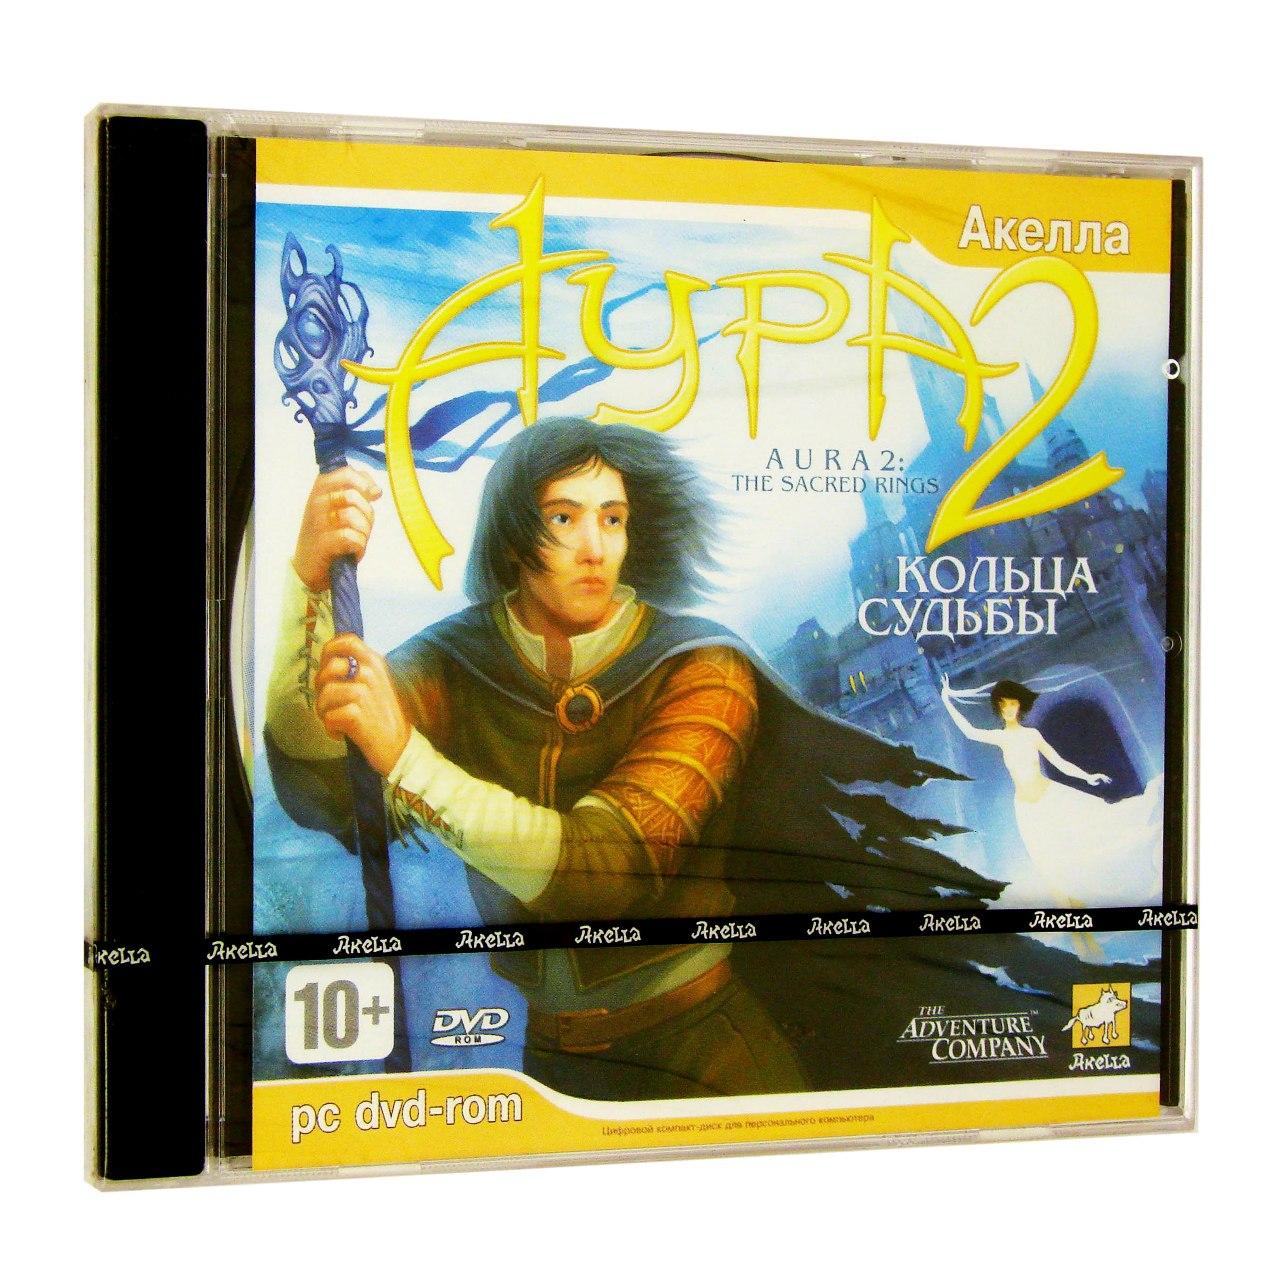 Компьютерный компакт-диск Аура 2: Кольца судьбы (ПК), фирма "Акелла", 1DVD